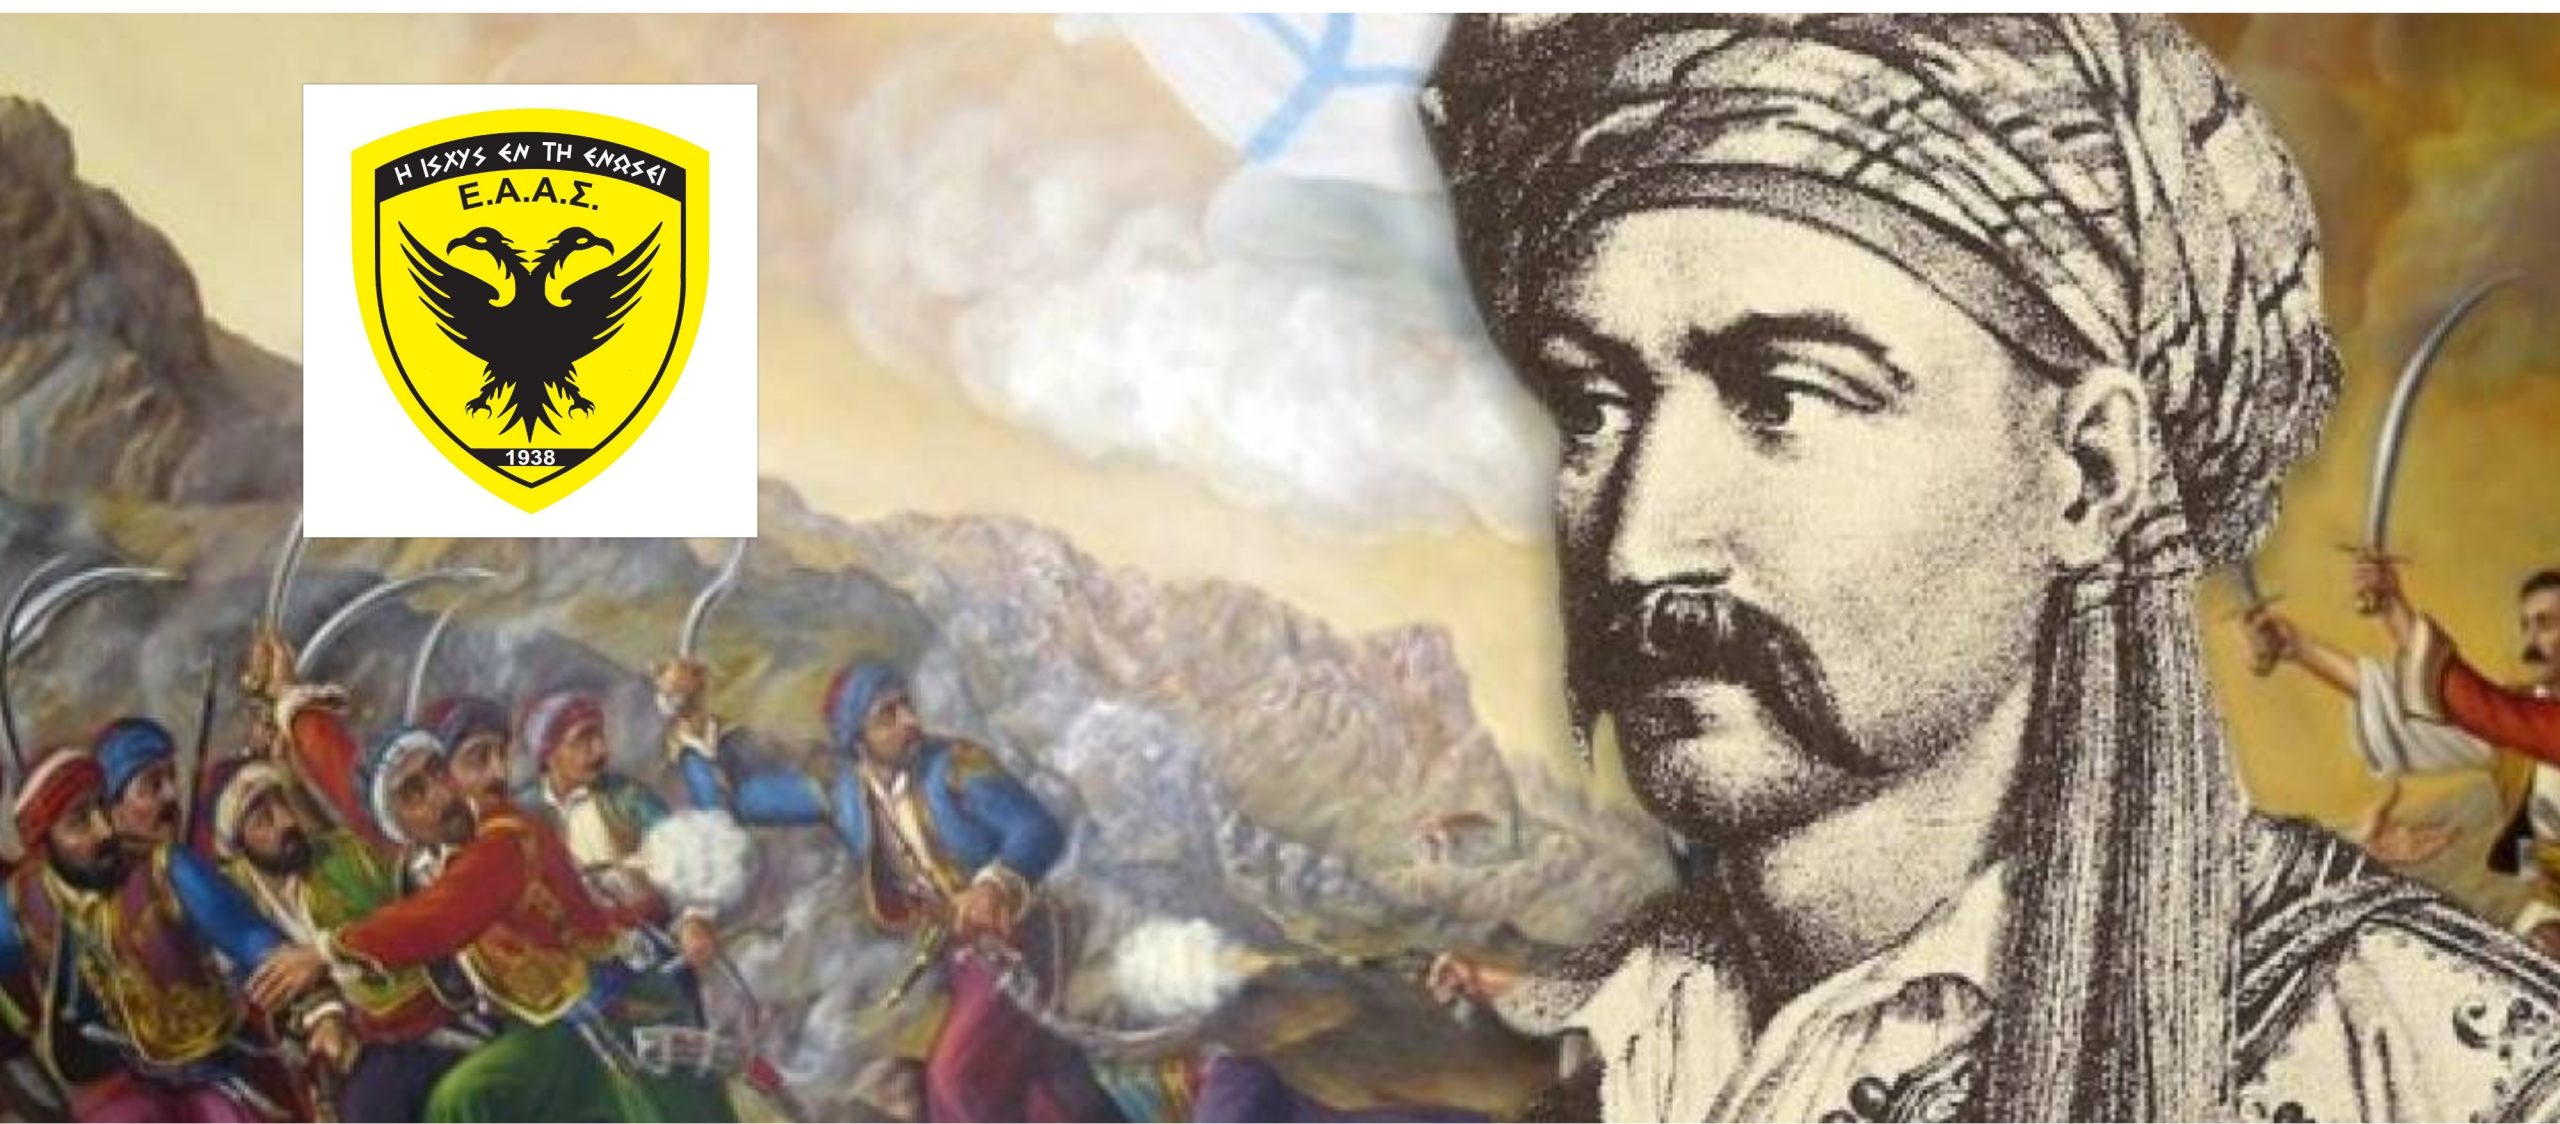 Η ανακοίνωση της ΕΑΑΣ για τα 171 χρόνια από το θάνατο του Νικηταρά του Τουρκοφάγου